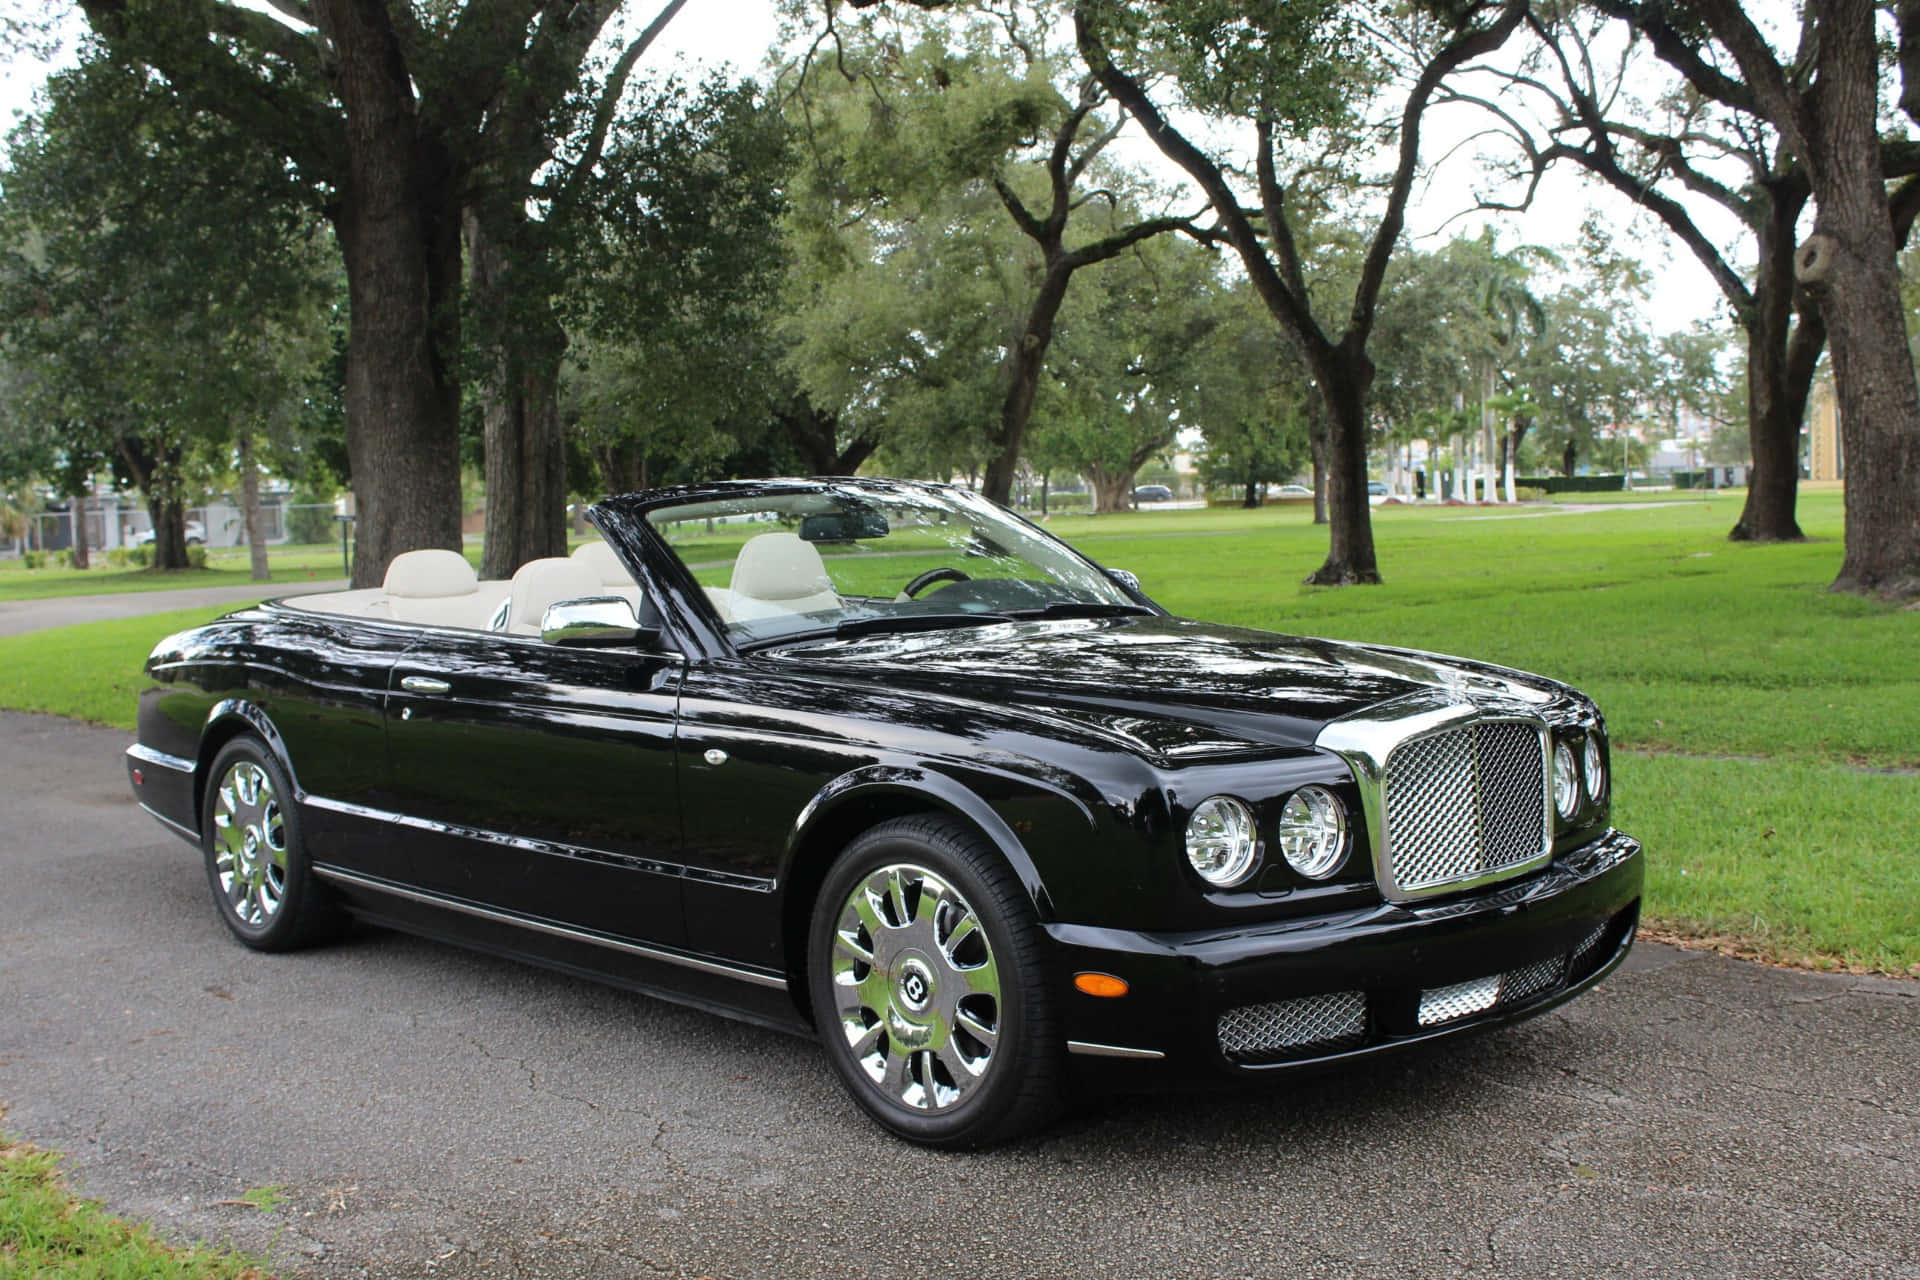 Feel the Luxury of a Bentley